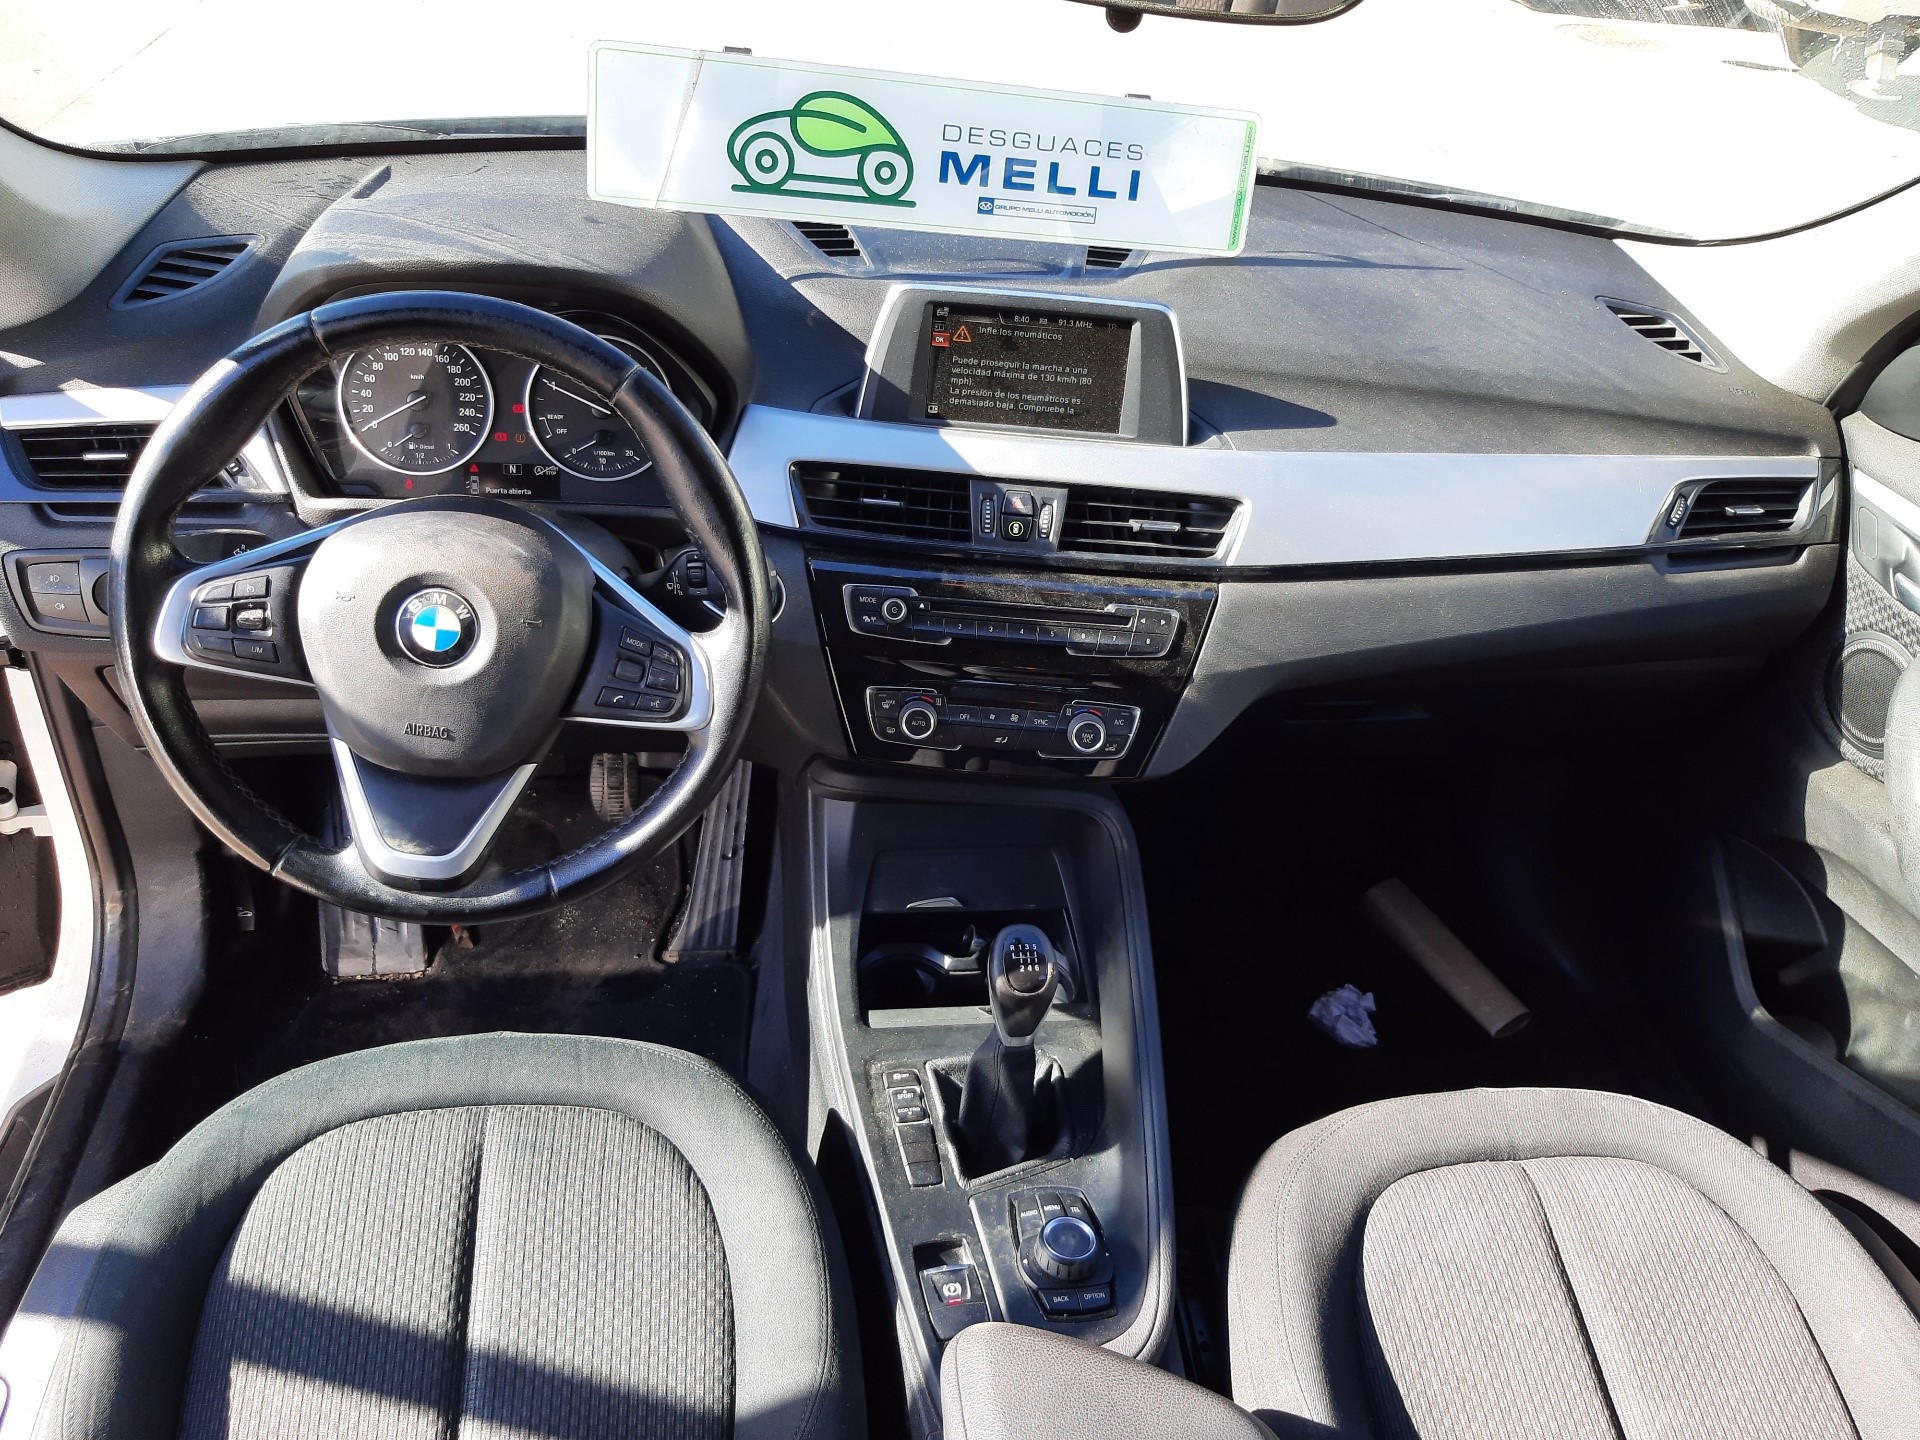 BMW X1 F48/F49 (2015-2023) Front Bumper 51117453562 25086853